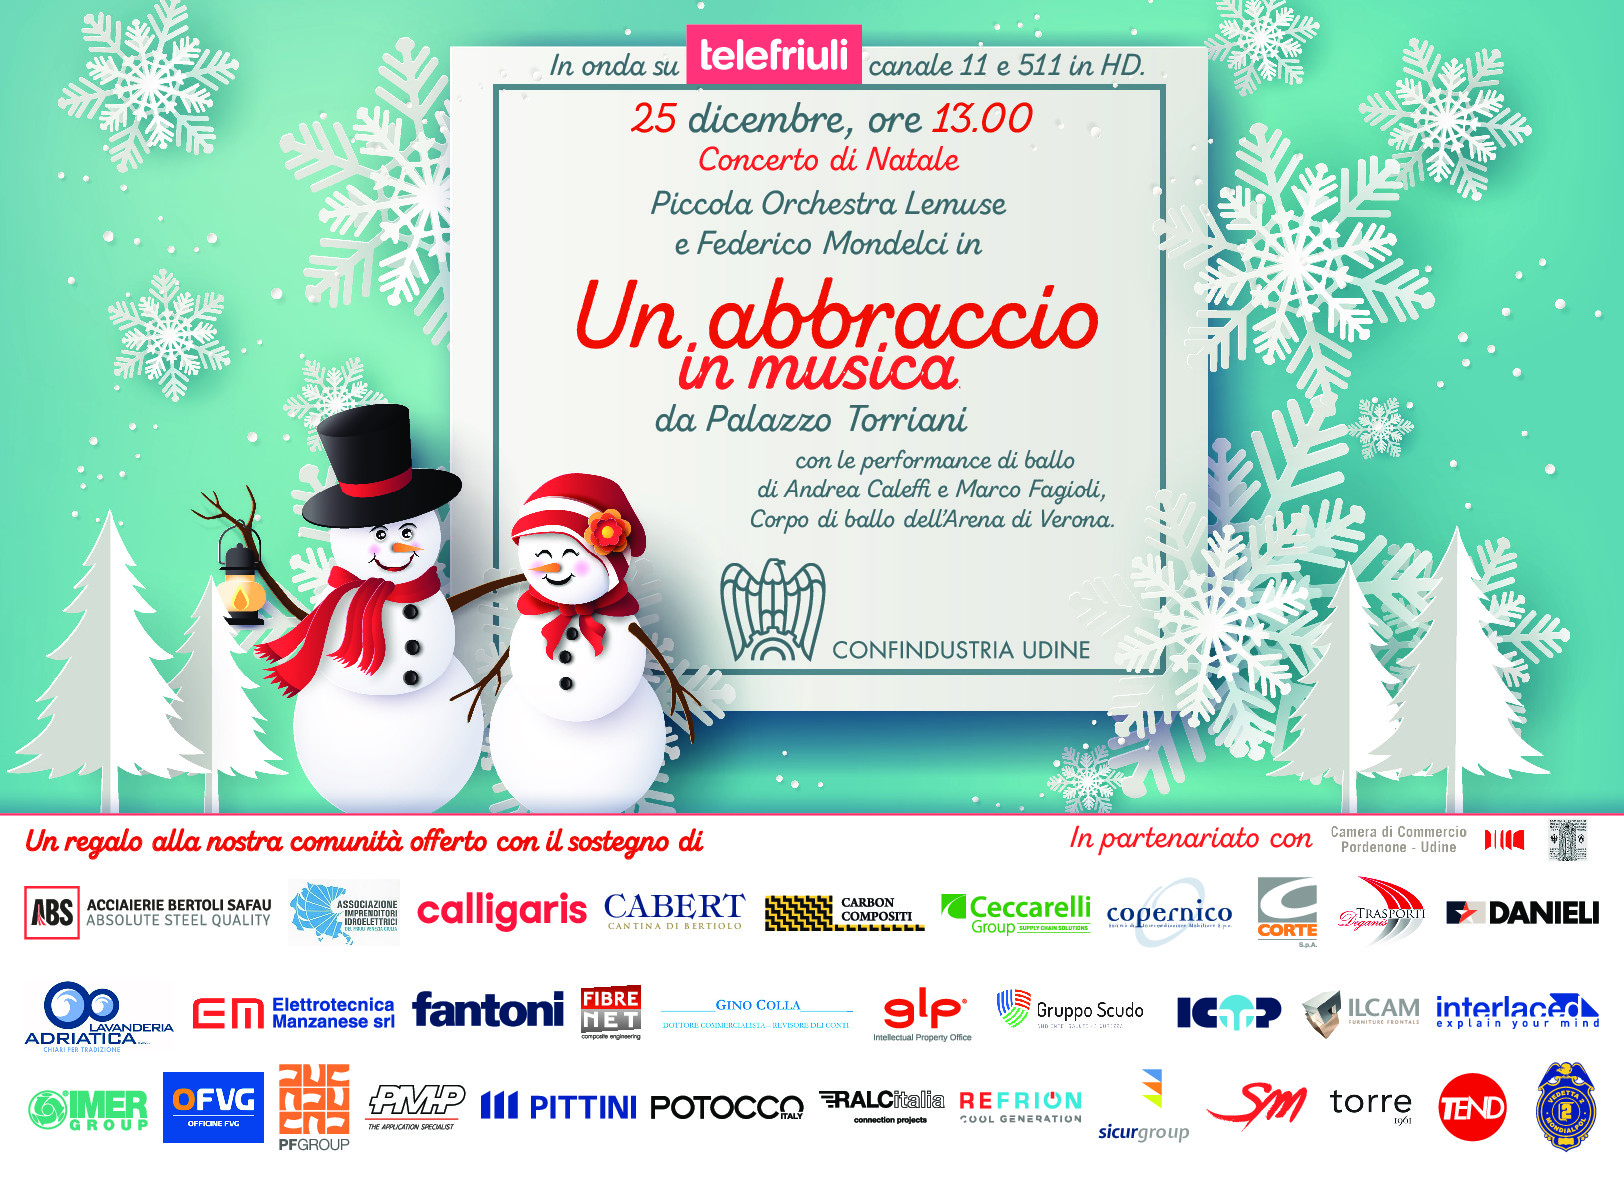 Al momento stai visualizzando “Un abbraccio in musica”: Confindustria Udine offre alla cittadinanza il concerto di Natale